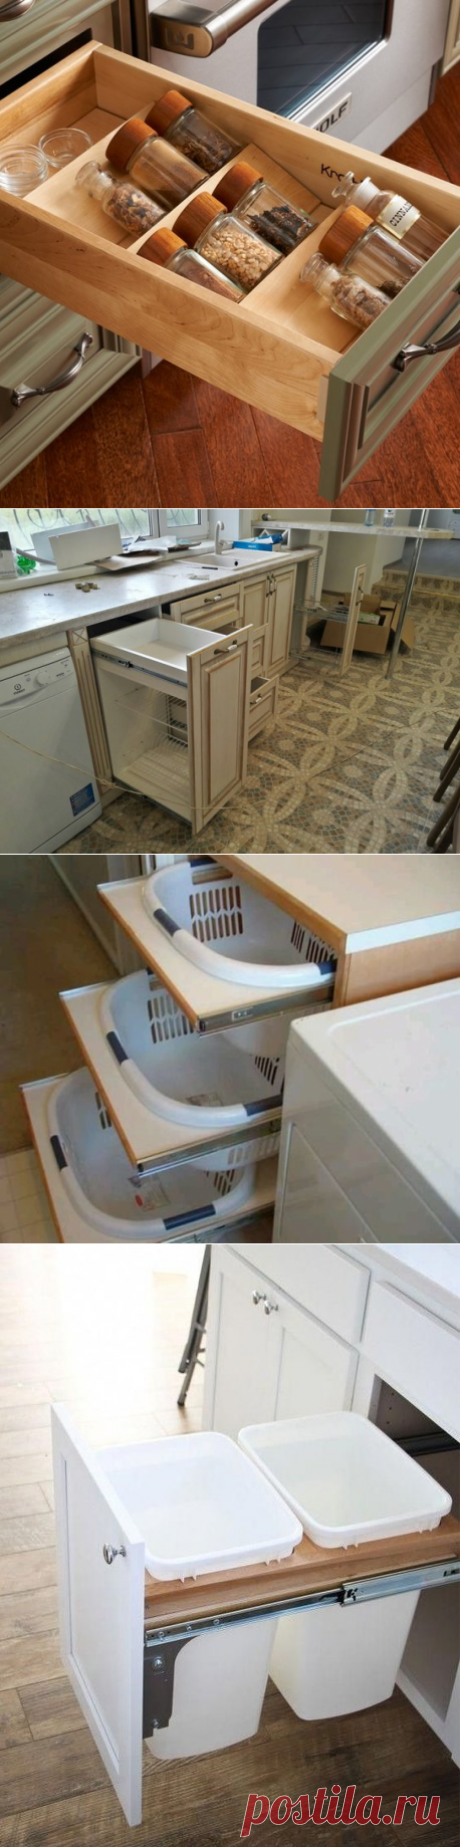 Как заменить дорогие кухонные системы хранения | Мебель своими руками | Яндекс Дзен